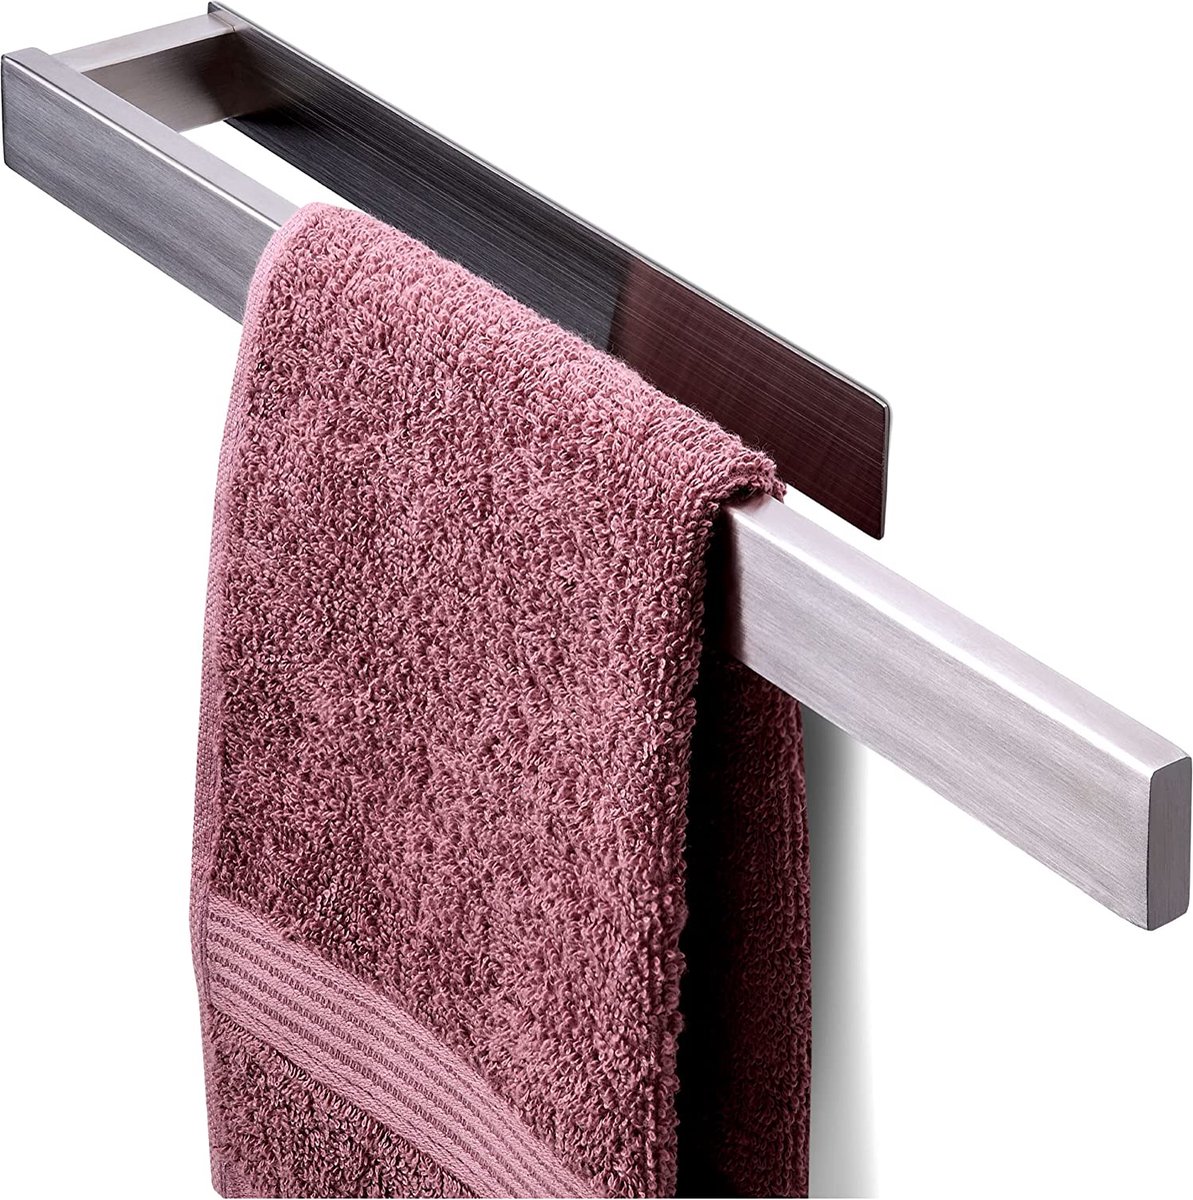 Handdoekhouder zonder boren - 40 cm - roestvast roestvrij staal-houdt Bomvast - snelle montage-milieuvriendelijke verpakking (Zilver)